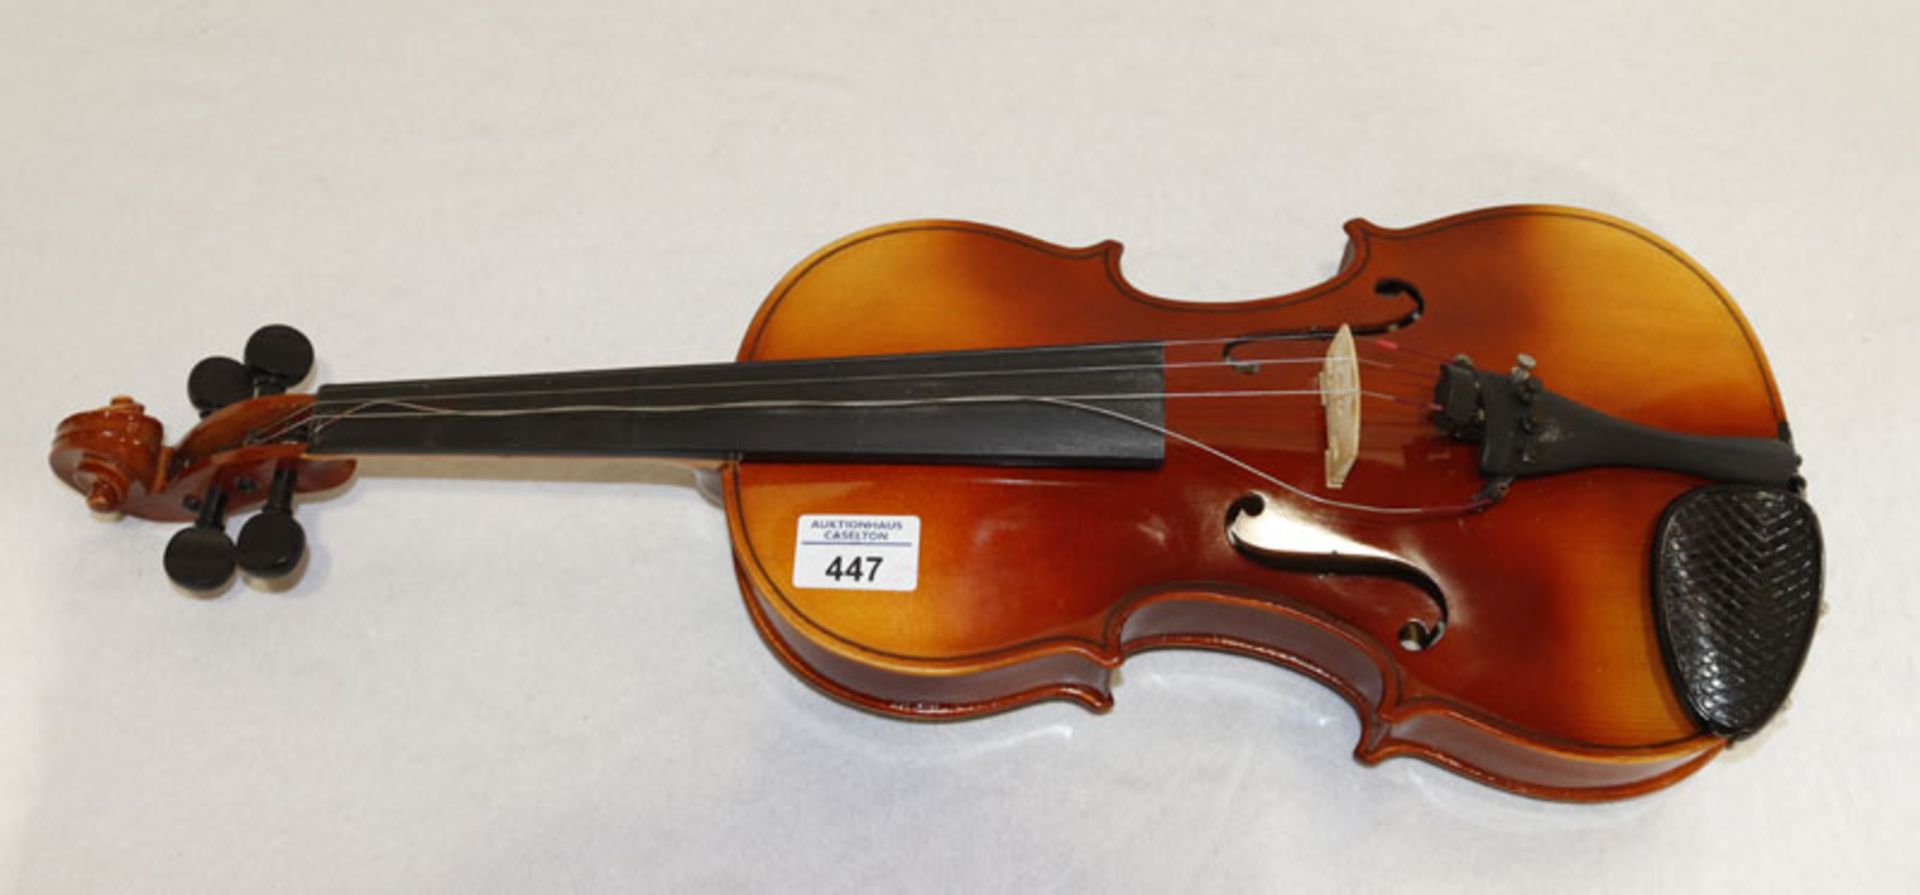 Geige aus Tschechien, bespielt, H 60 cm, B 22 cm, T 11 cm